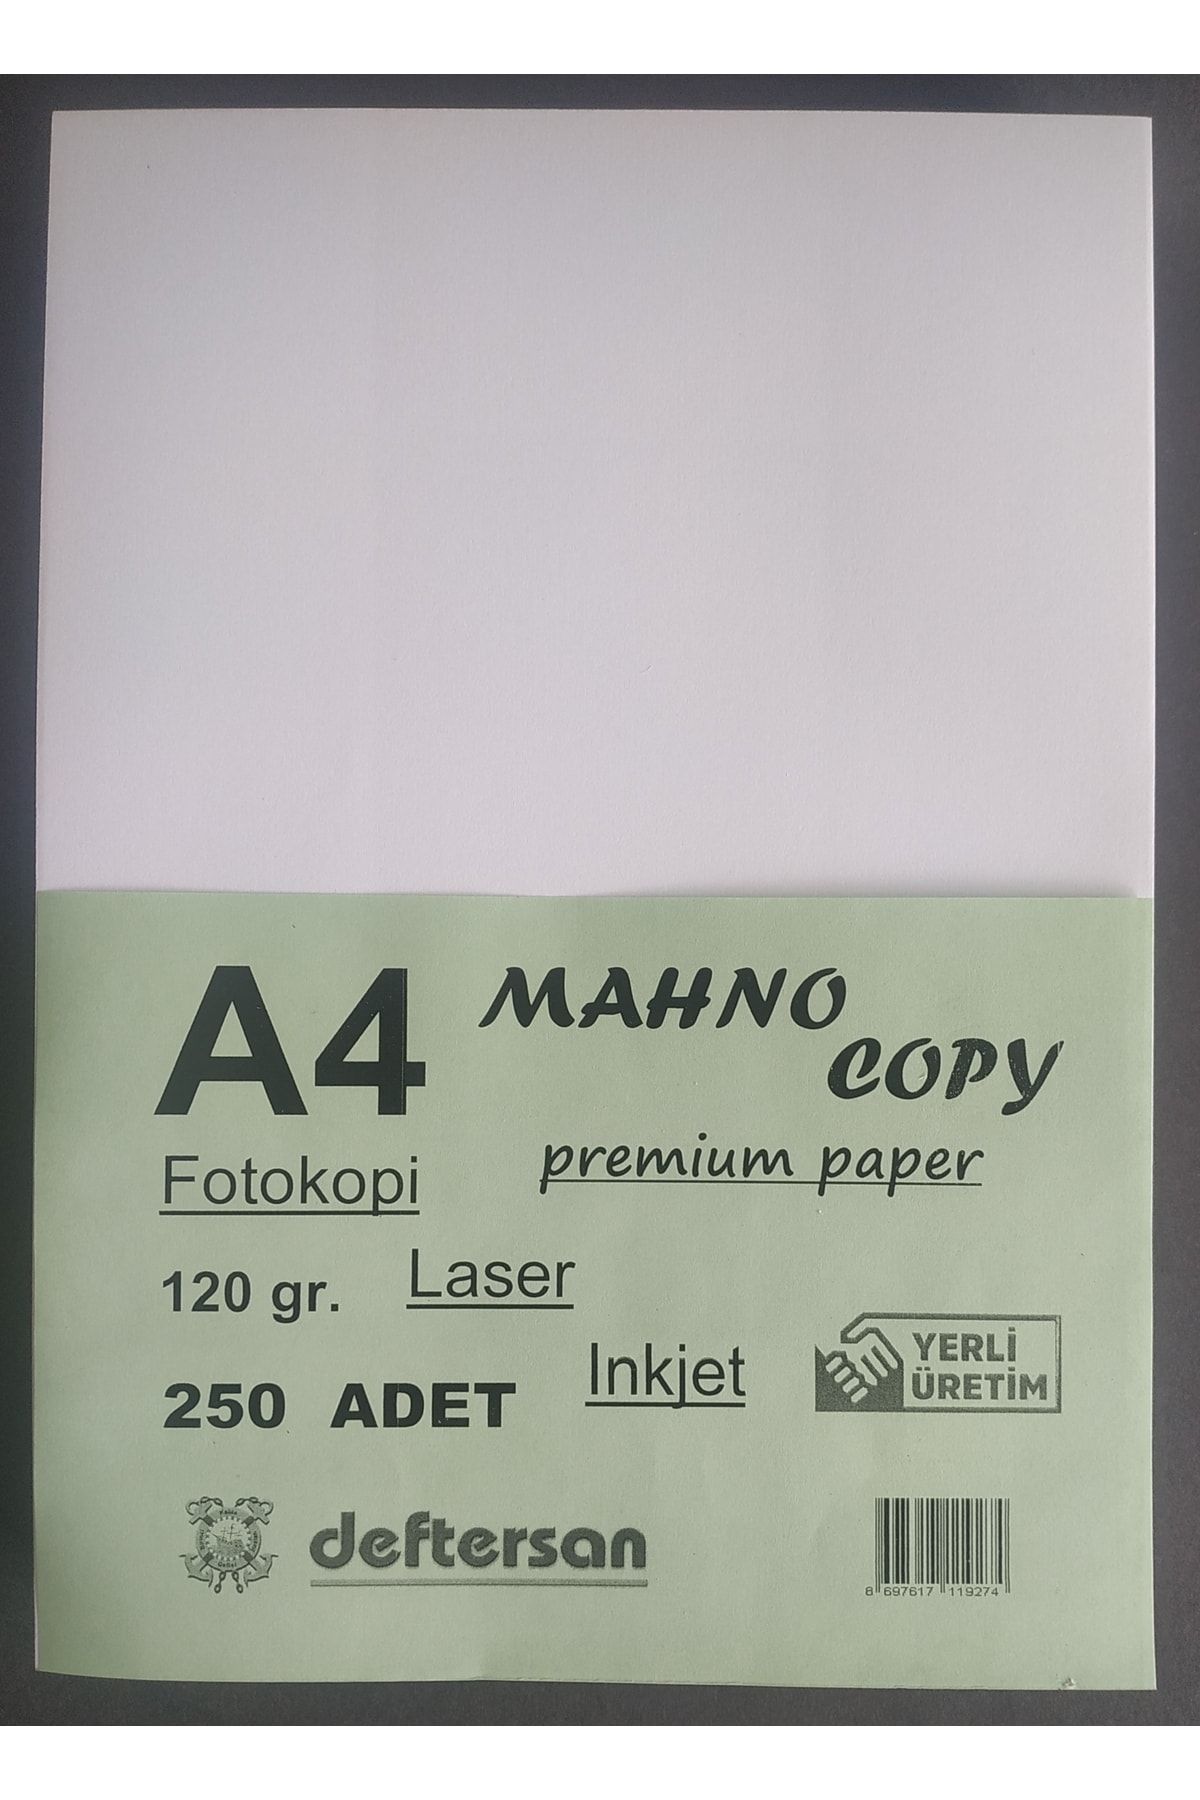 DEFTERSAN A4 Gramajlı Fotokopi Yazıcı Kağıdı 120 gr 250 Adet